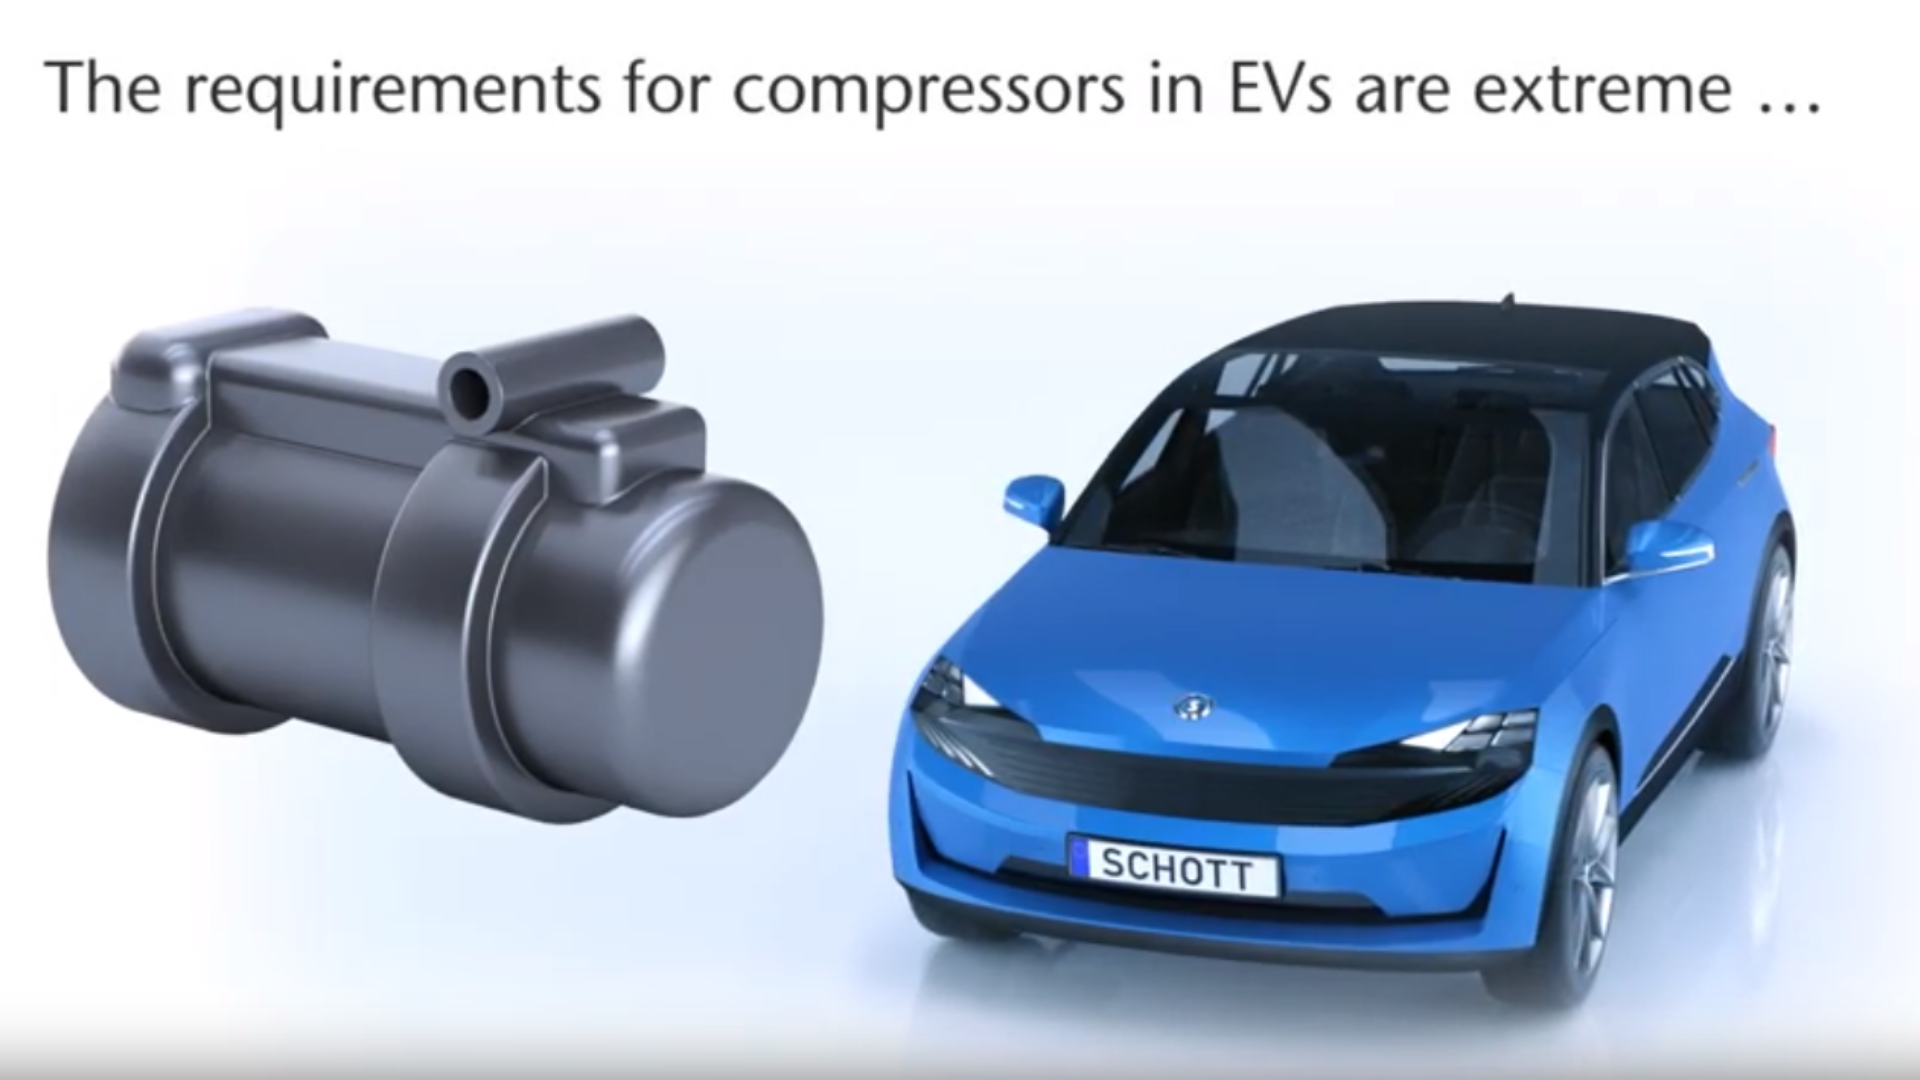 Cliquez ici pour découvrir pourquoi les bornes de compresseurs de haute qualité sont si importantes dans les systèmes de climatisation automobile.